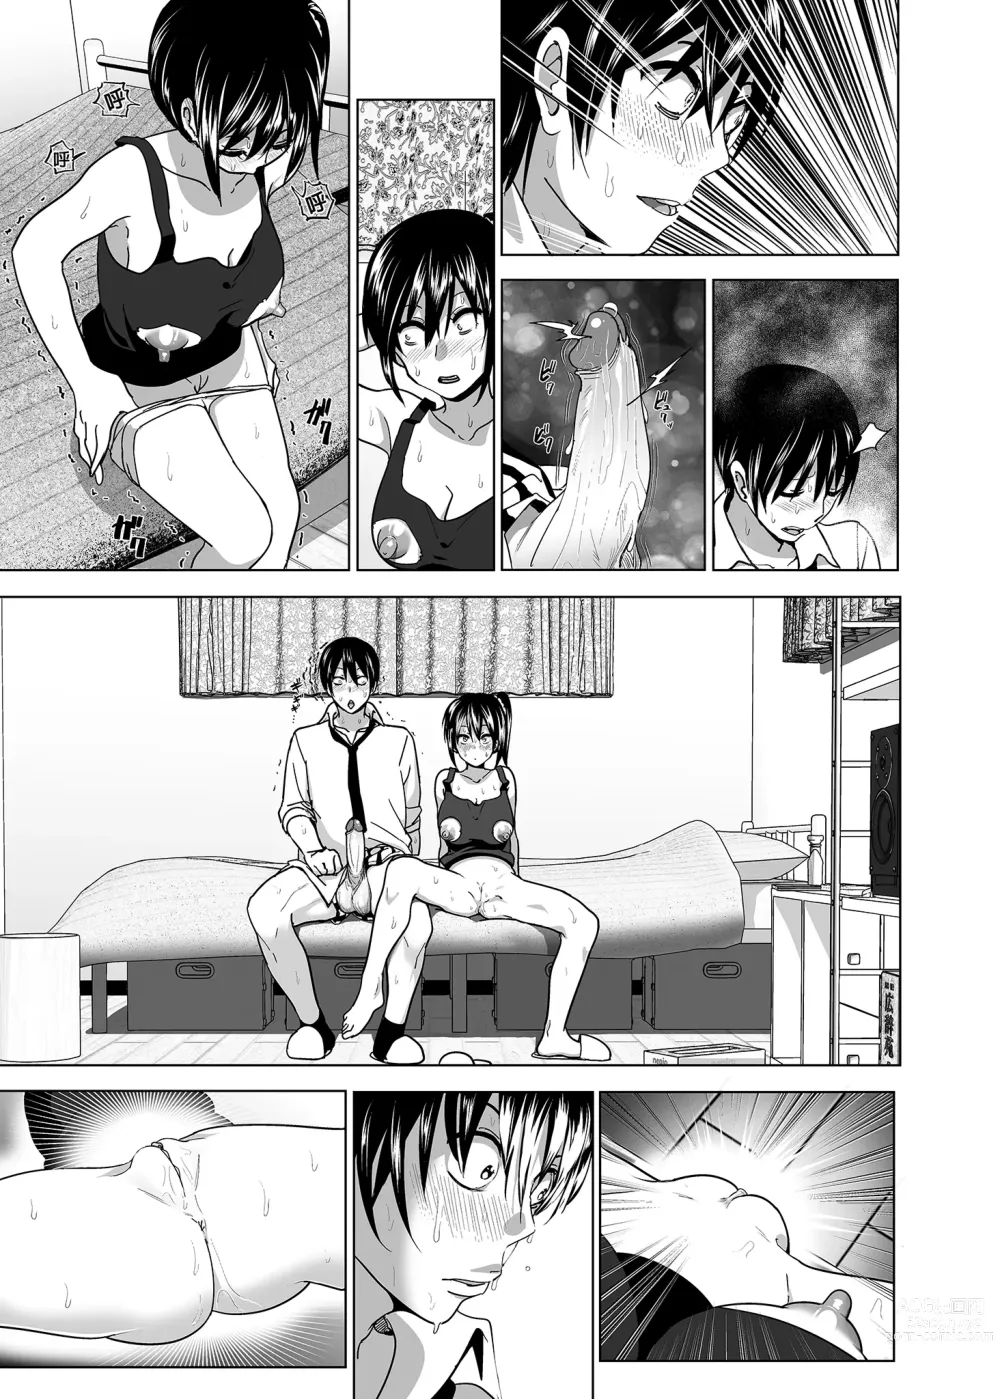 Page 74 of doujinshi 關於妹妹胸部 整顆露出來的那件事 總集篇1 (decensored)